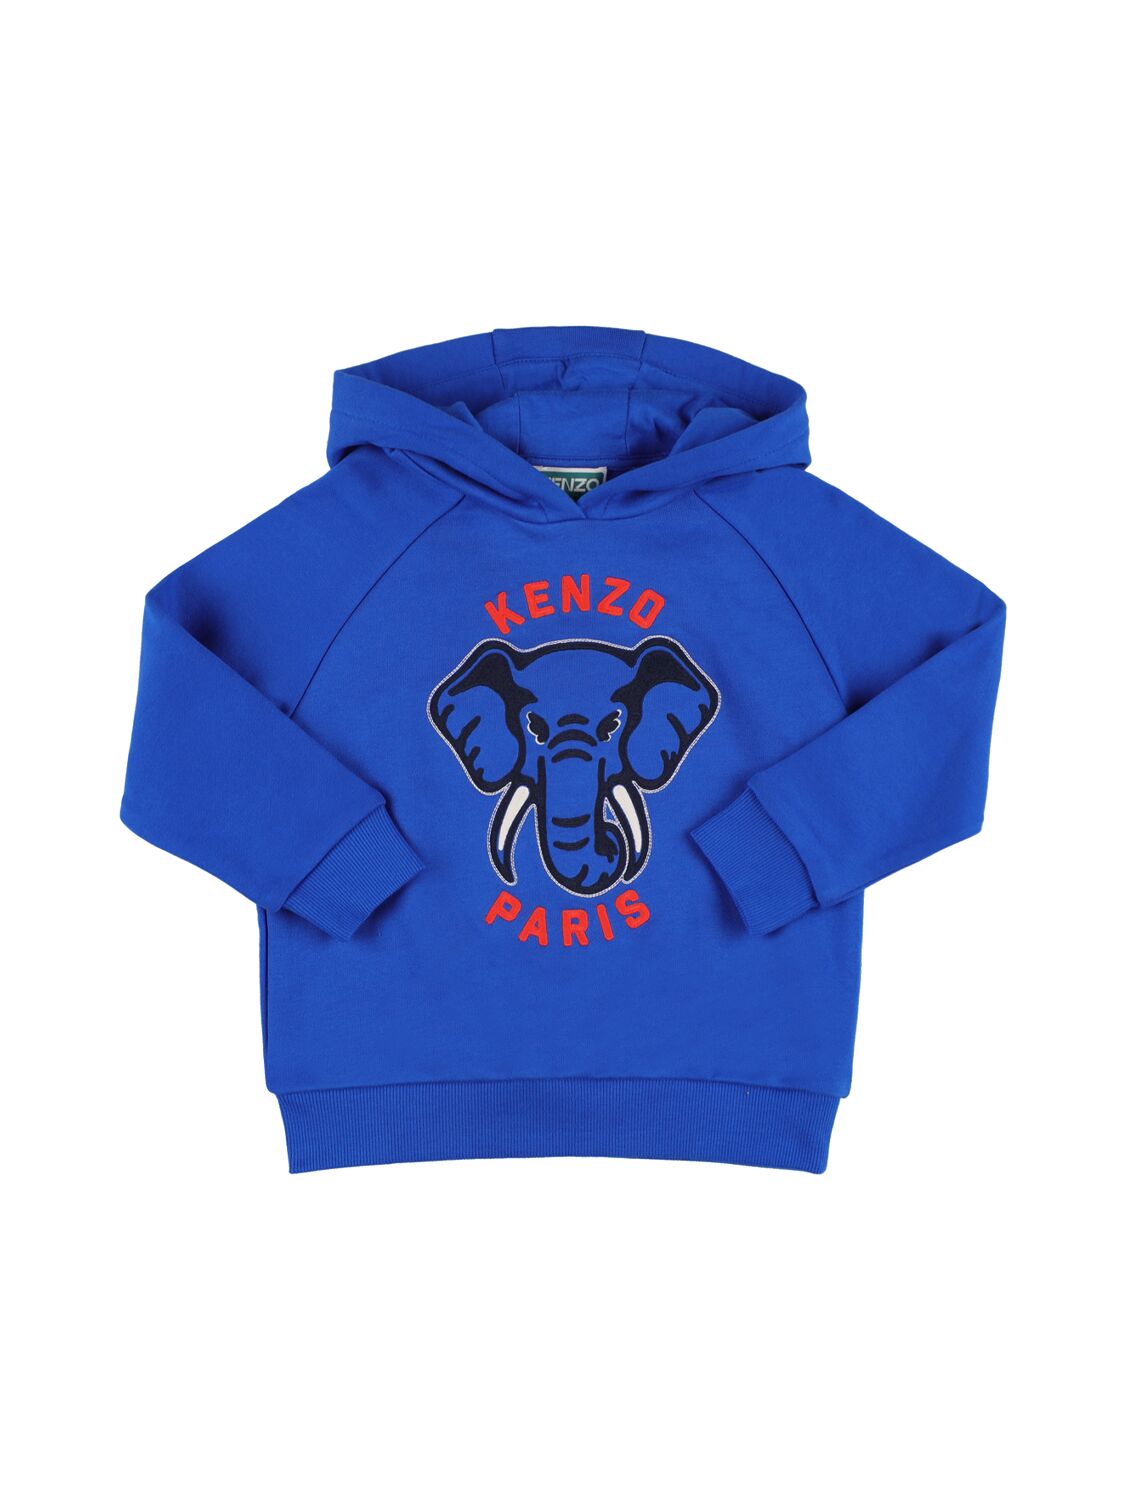 Kenzo Kids' Cotton Sweatshirt Hoodie In Blue